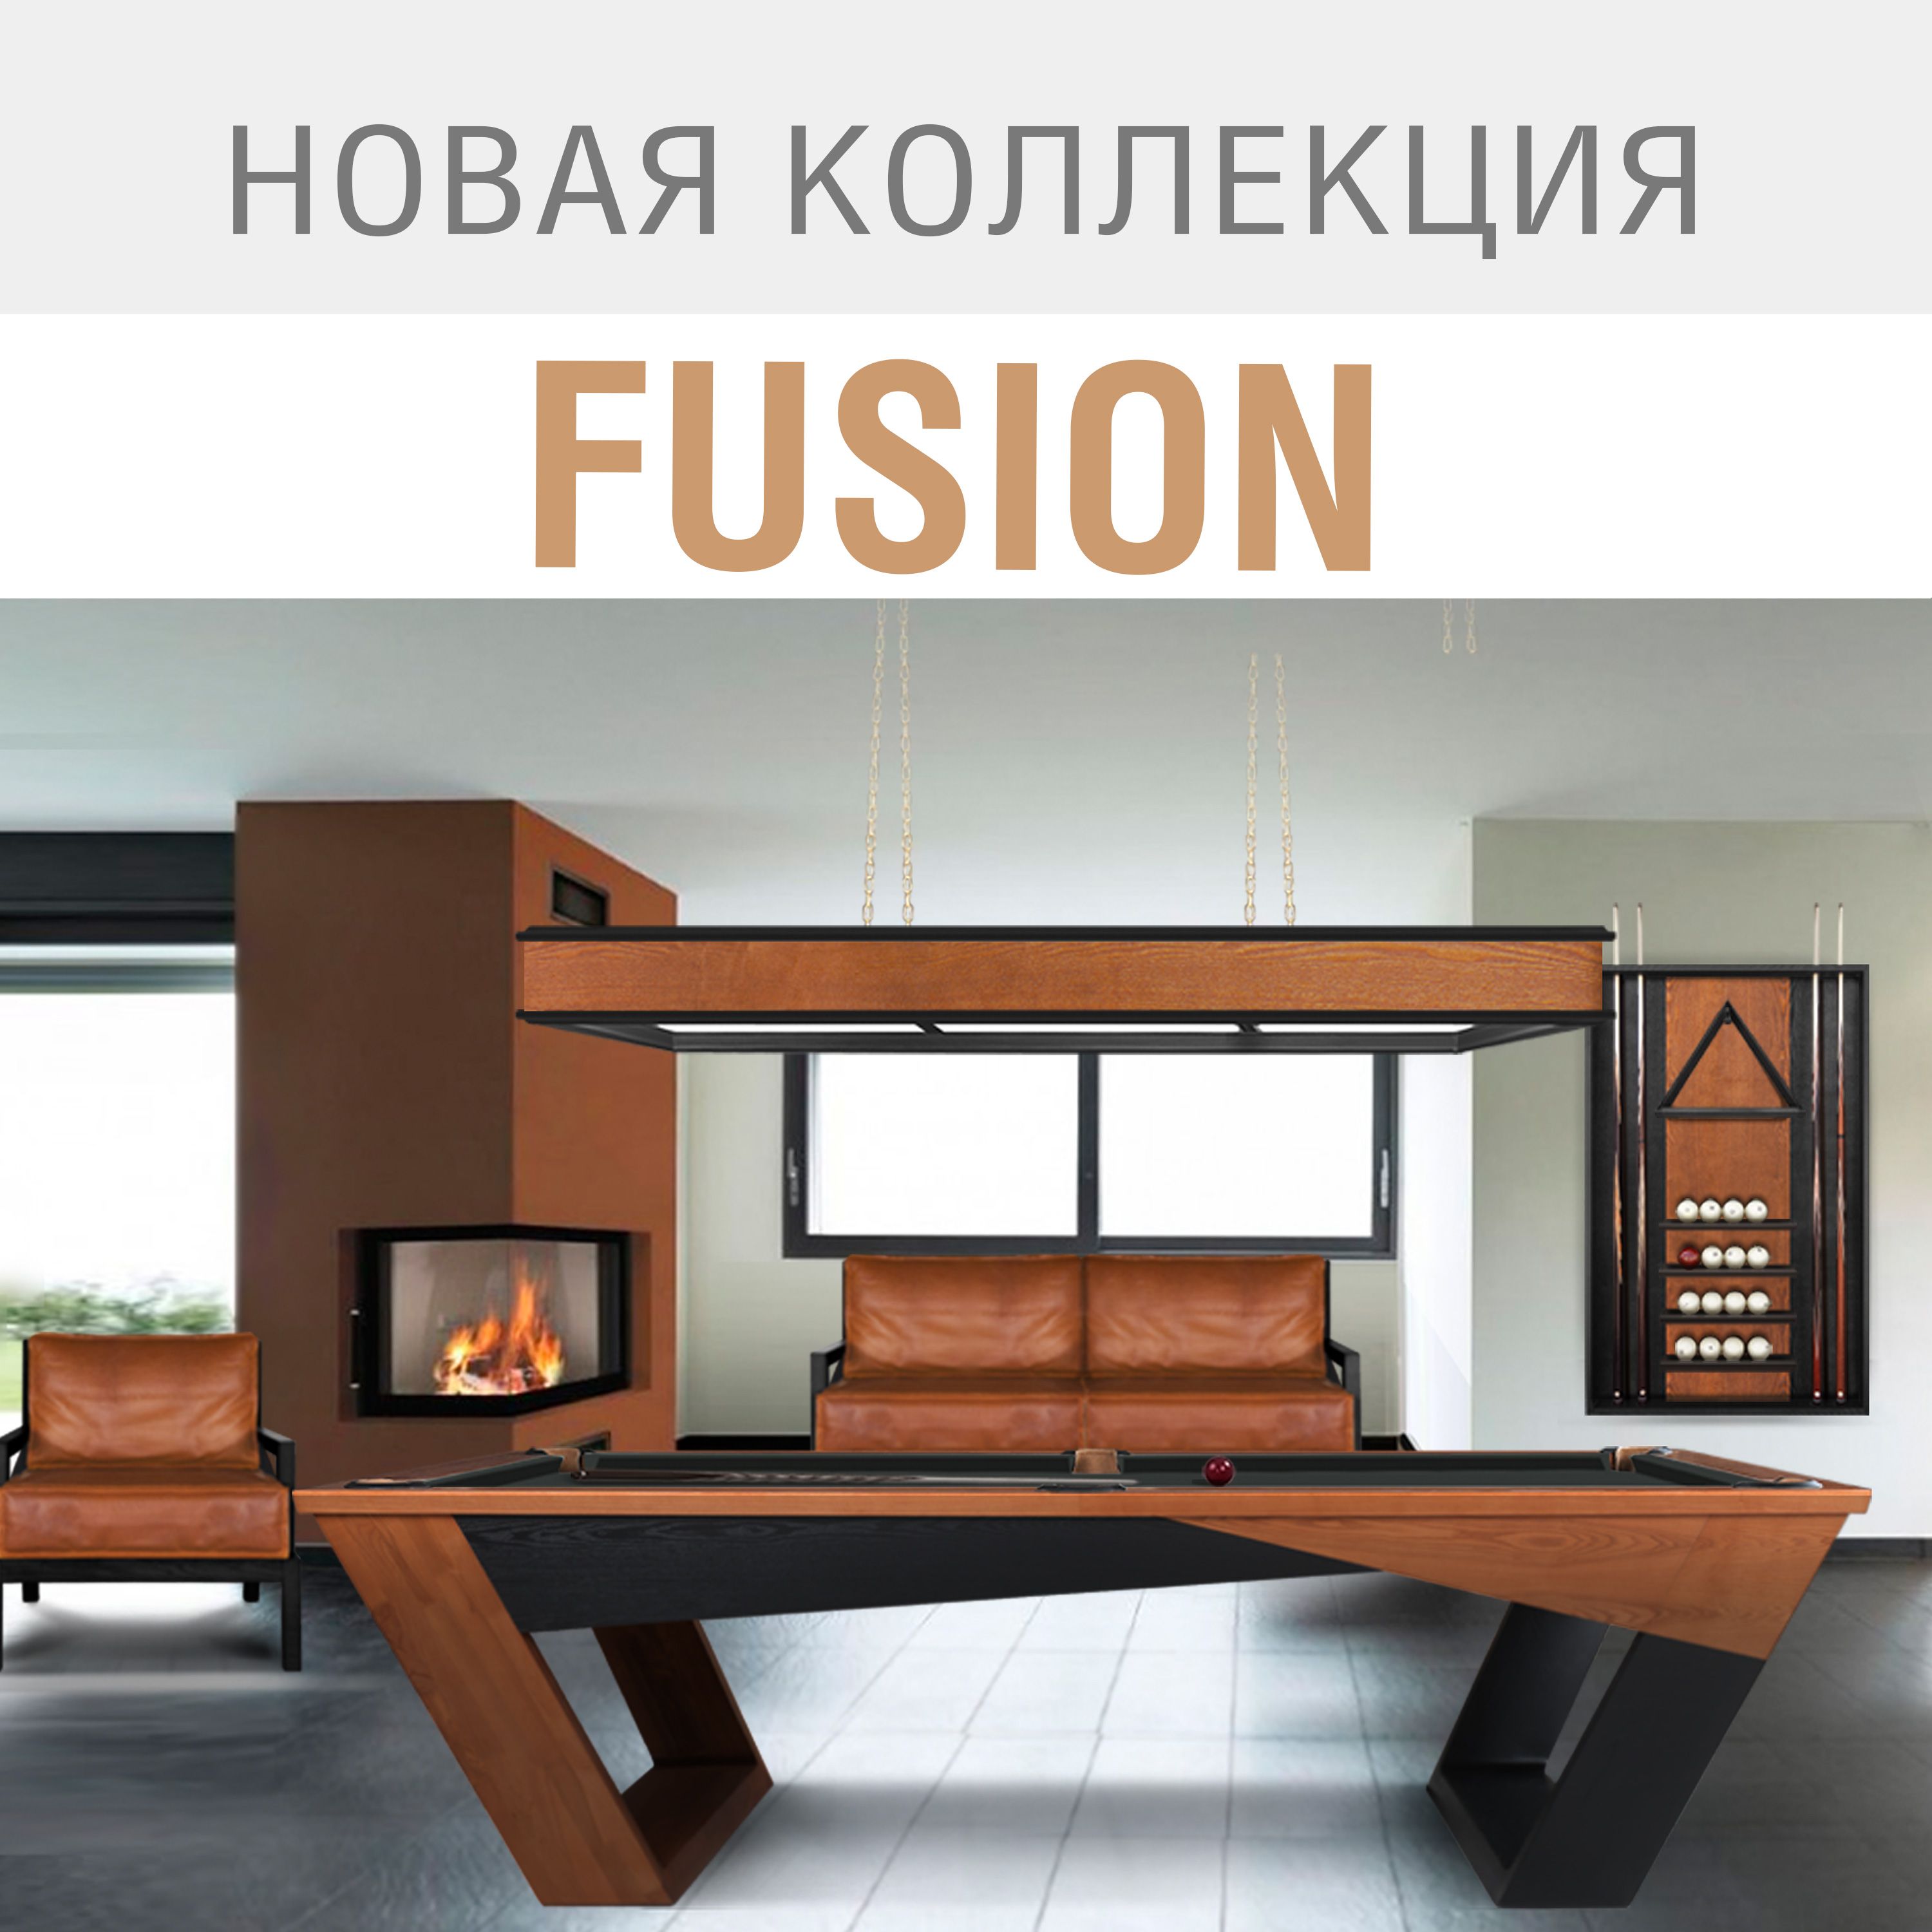 Новая бильярдная коллекция Fusion – торжество высоких технологий!